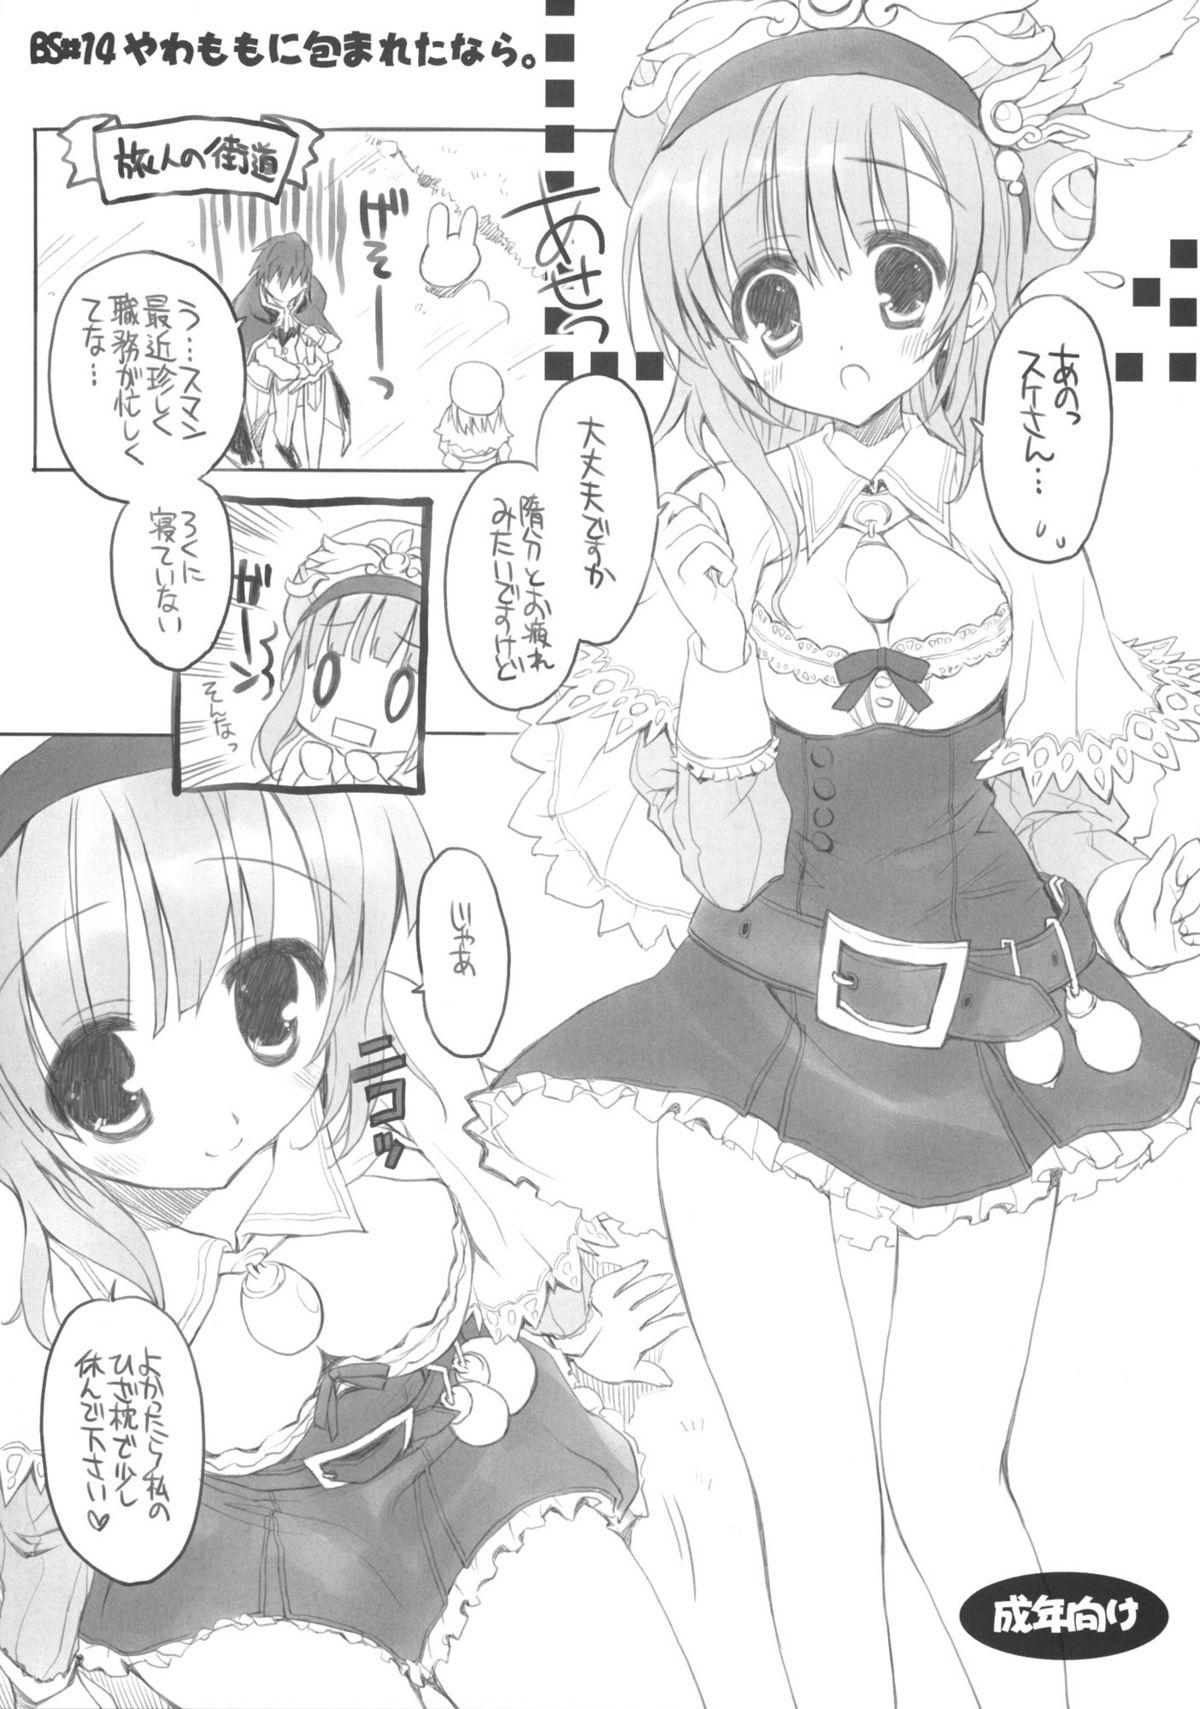 Cums BS#14 Ya wa Momo ni Tsutsuma Retanara. - Atelier rorona Bear - Page 1